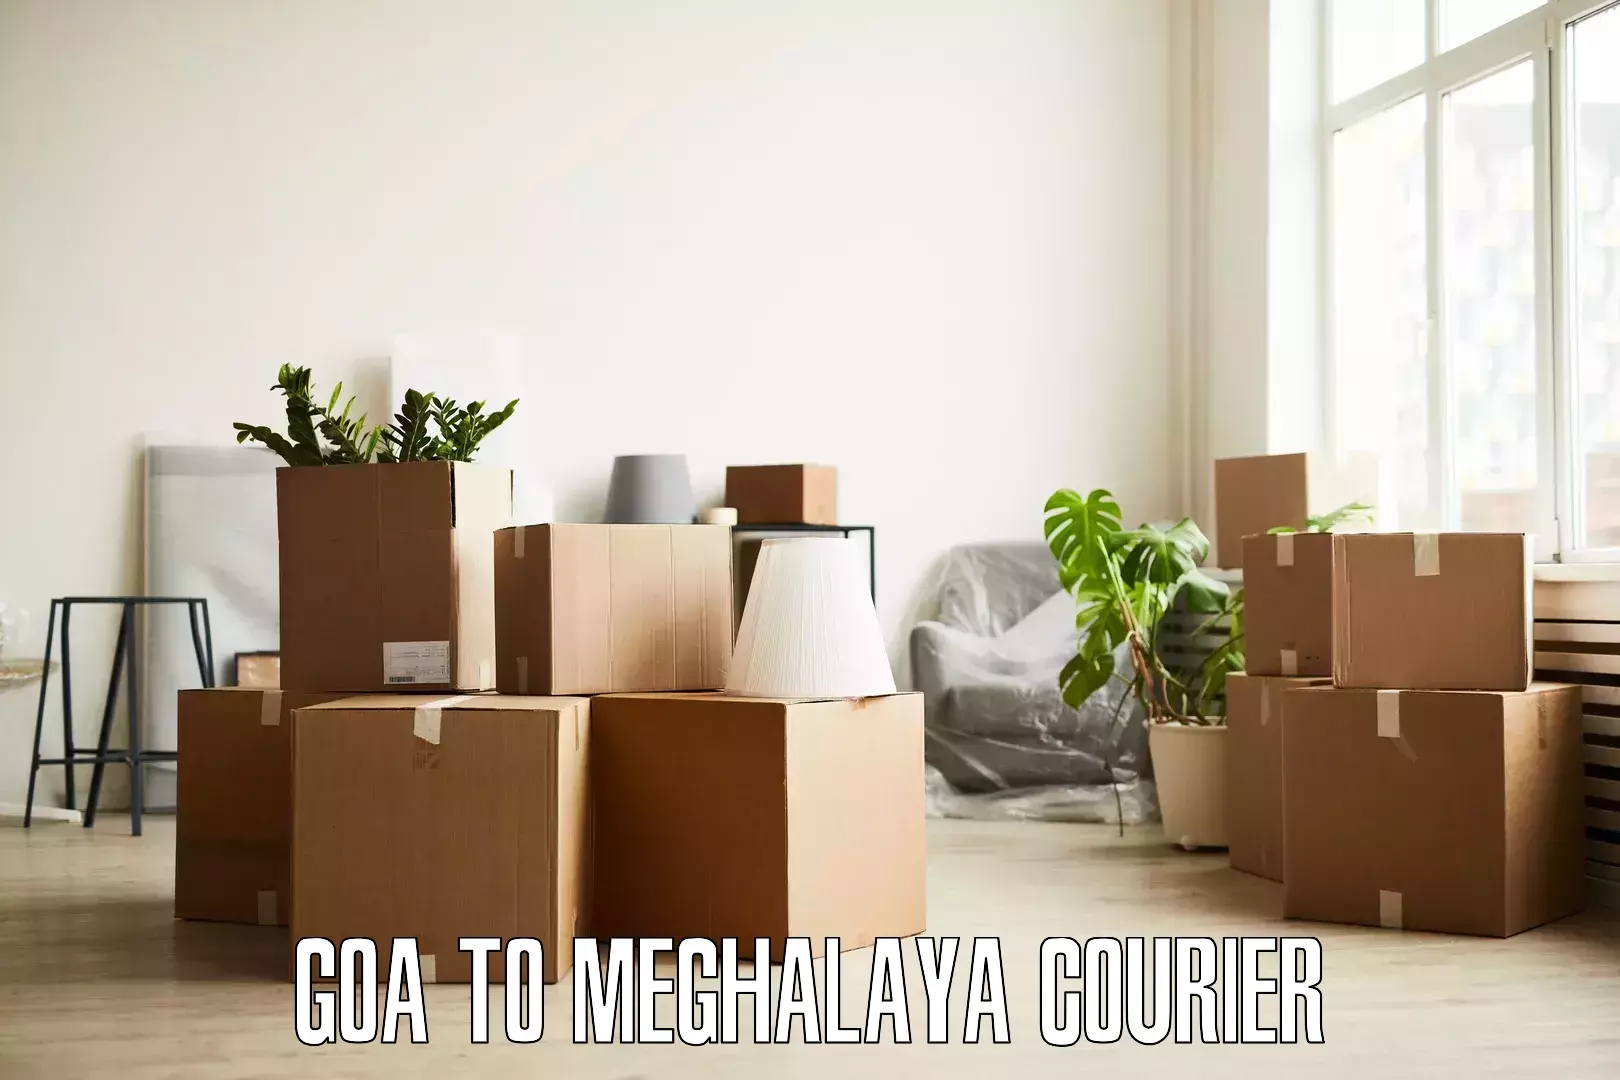 Full-service furniture transport in Goa to Jowai